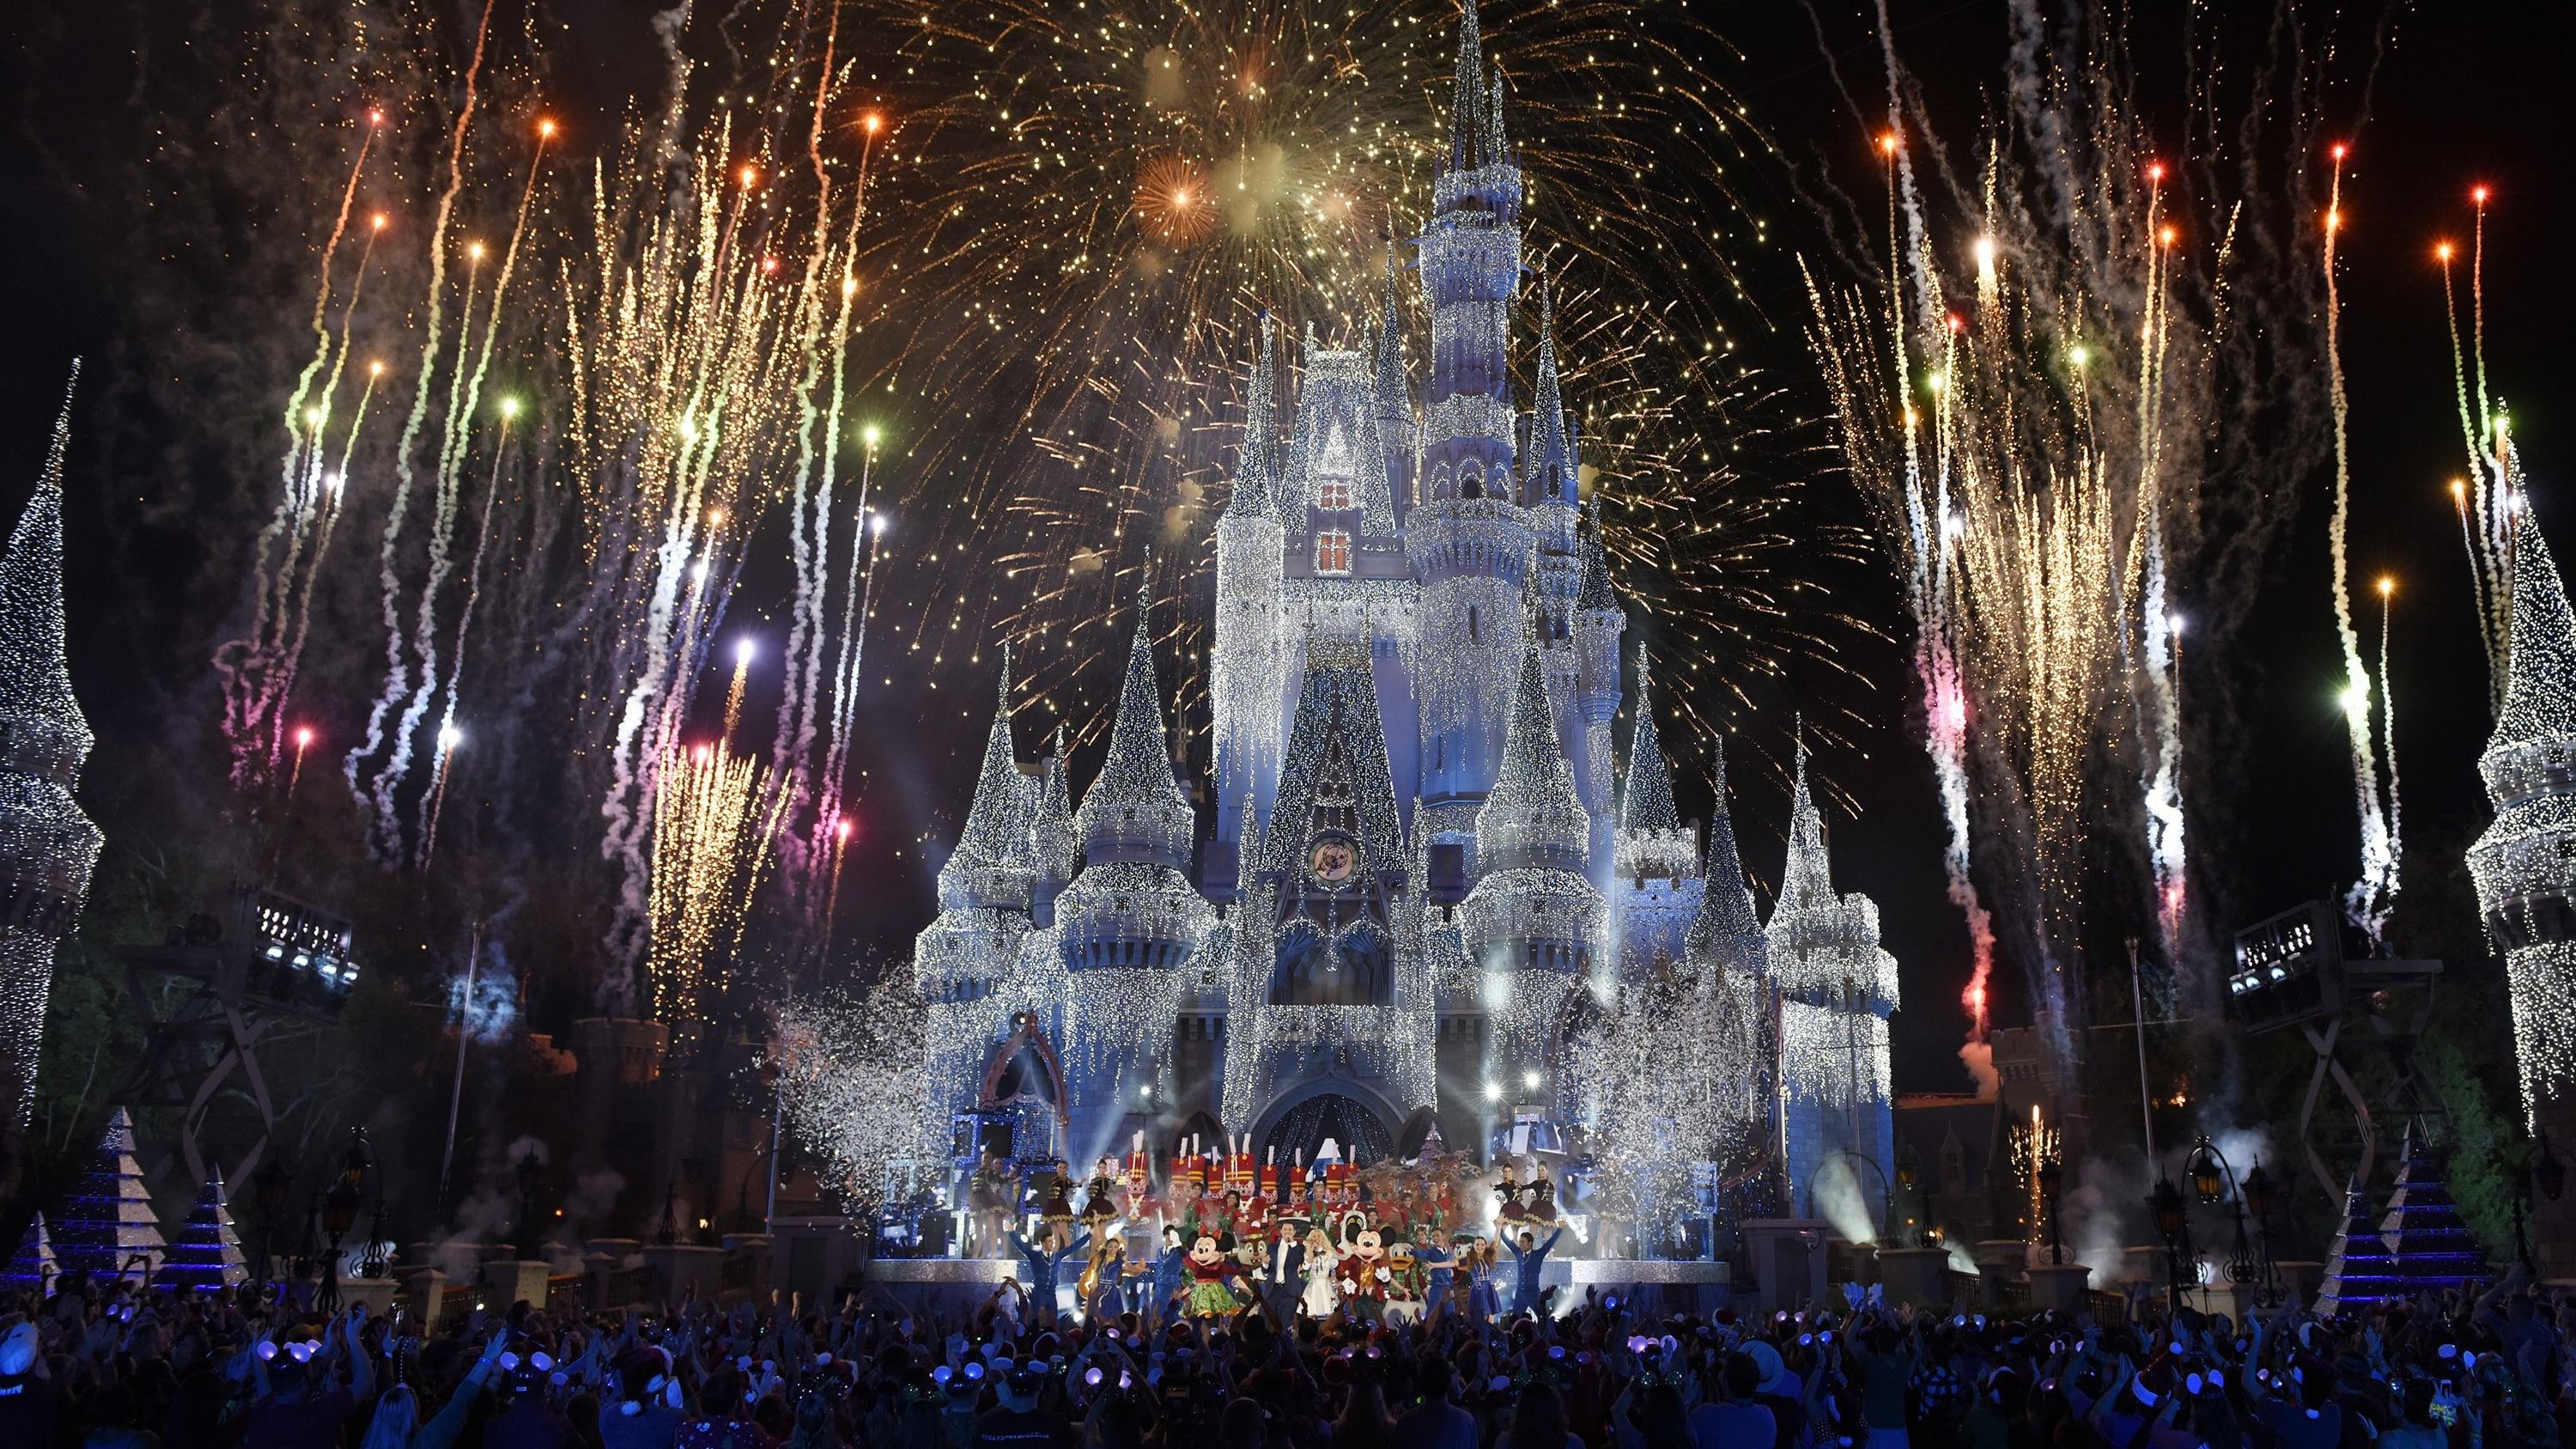 The Wonderful World of Disney: Magical Holiday Celebration backdrop